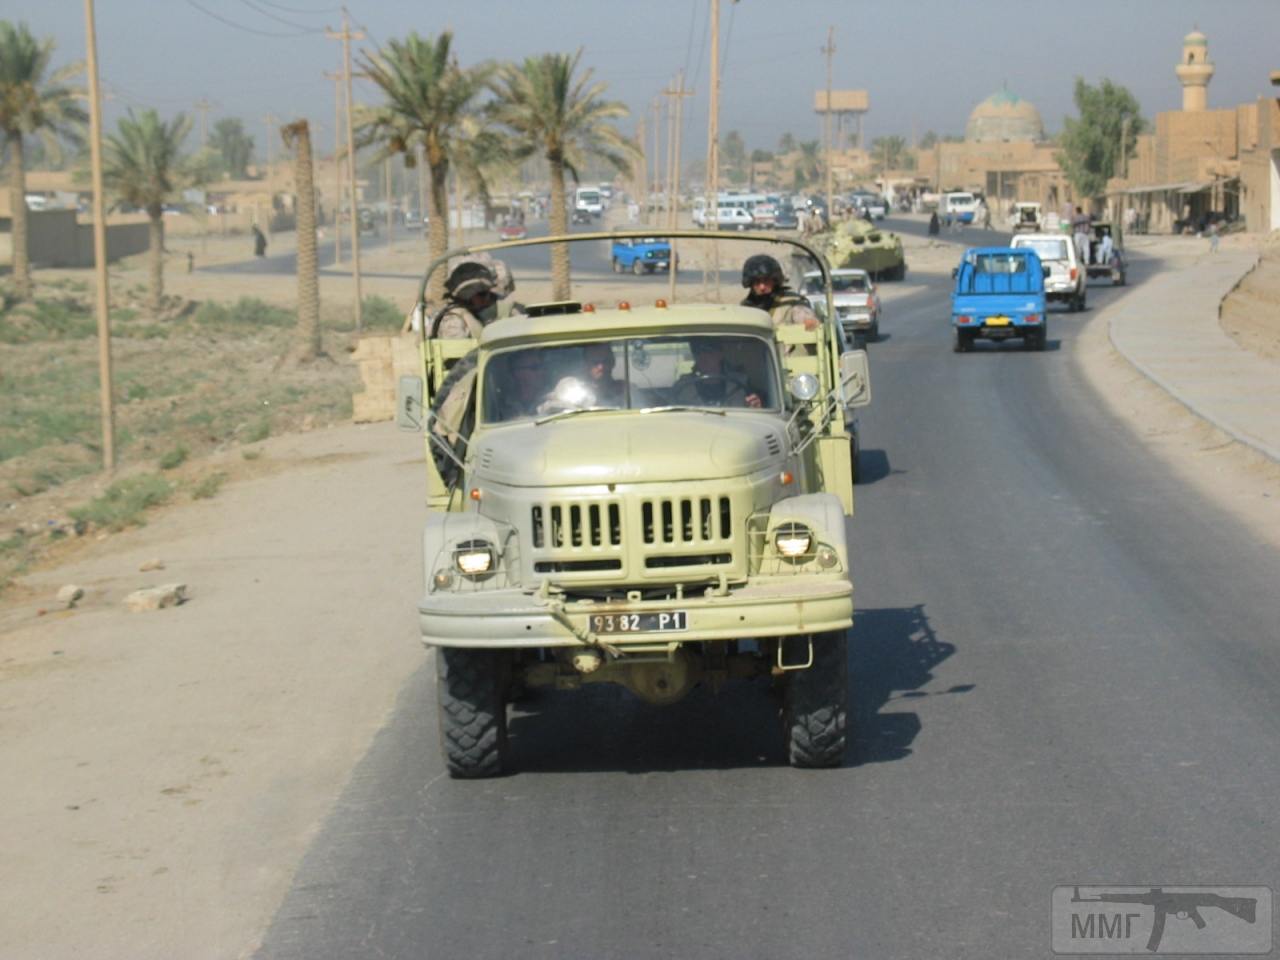 31434 - Участие ВСУ в миротворческой миссии в Ираке 2003-2008г.г.